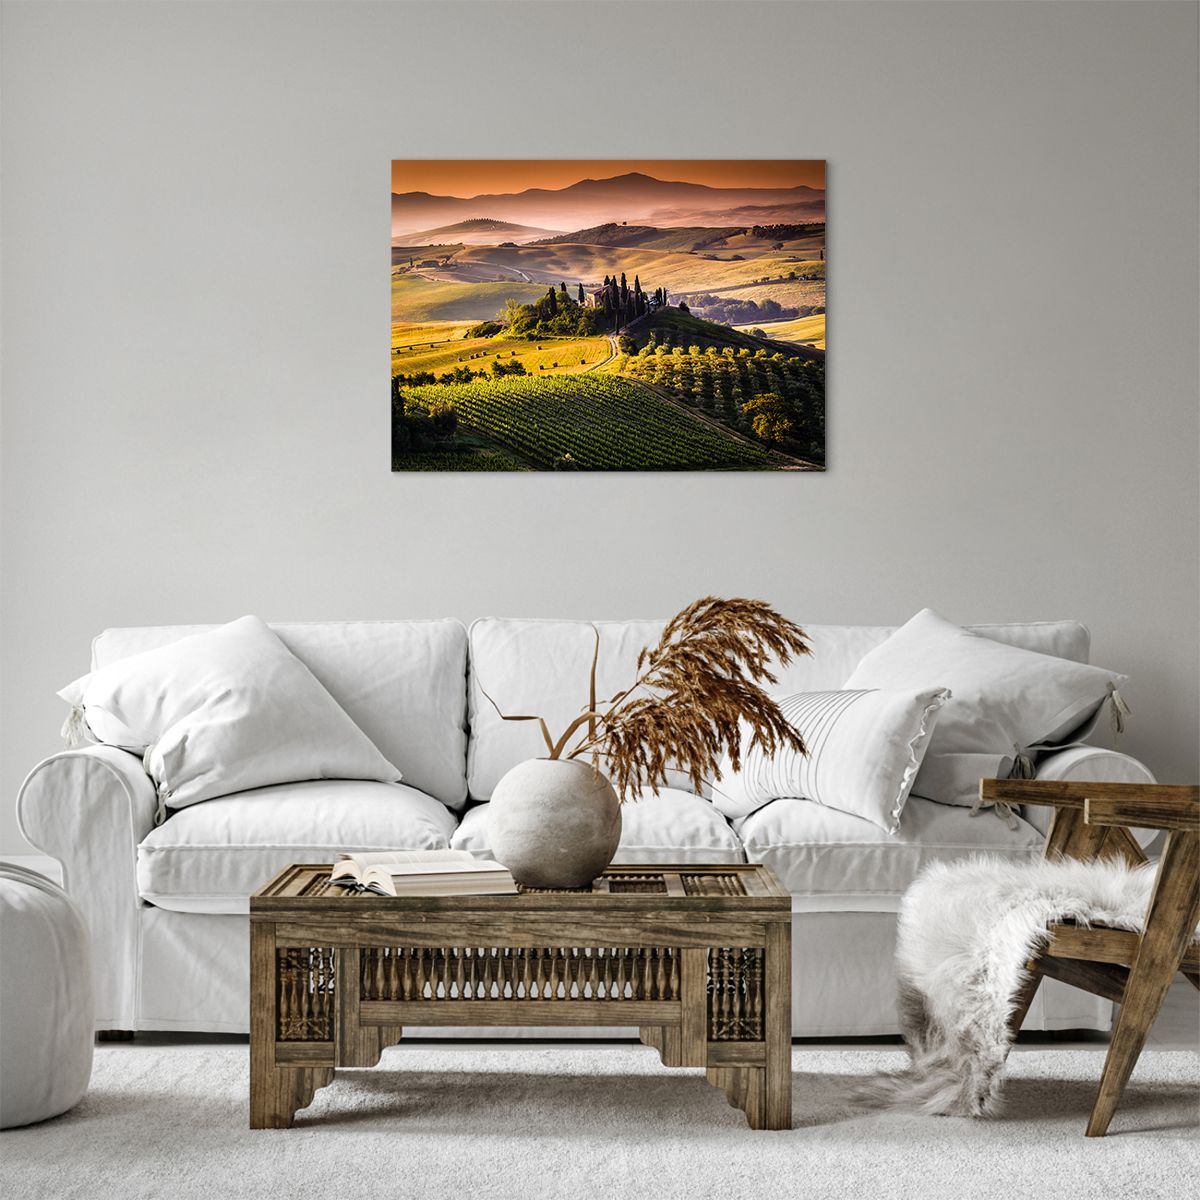 Bild auf Leinwand Landschaft, Bild auf Leinwand Toskana, Bild auf Leinwand Weinberge, Bild auf Leinwand Reisen, Bild auf Leinwand Italien